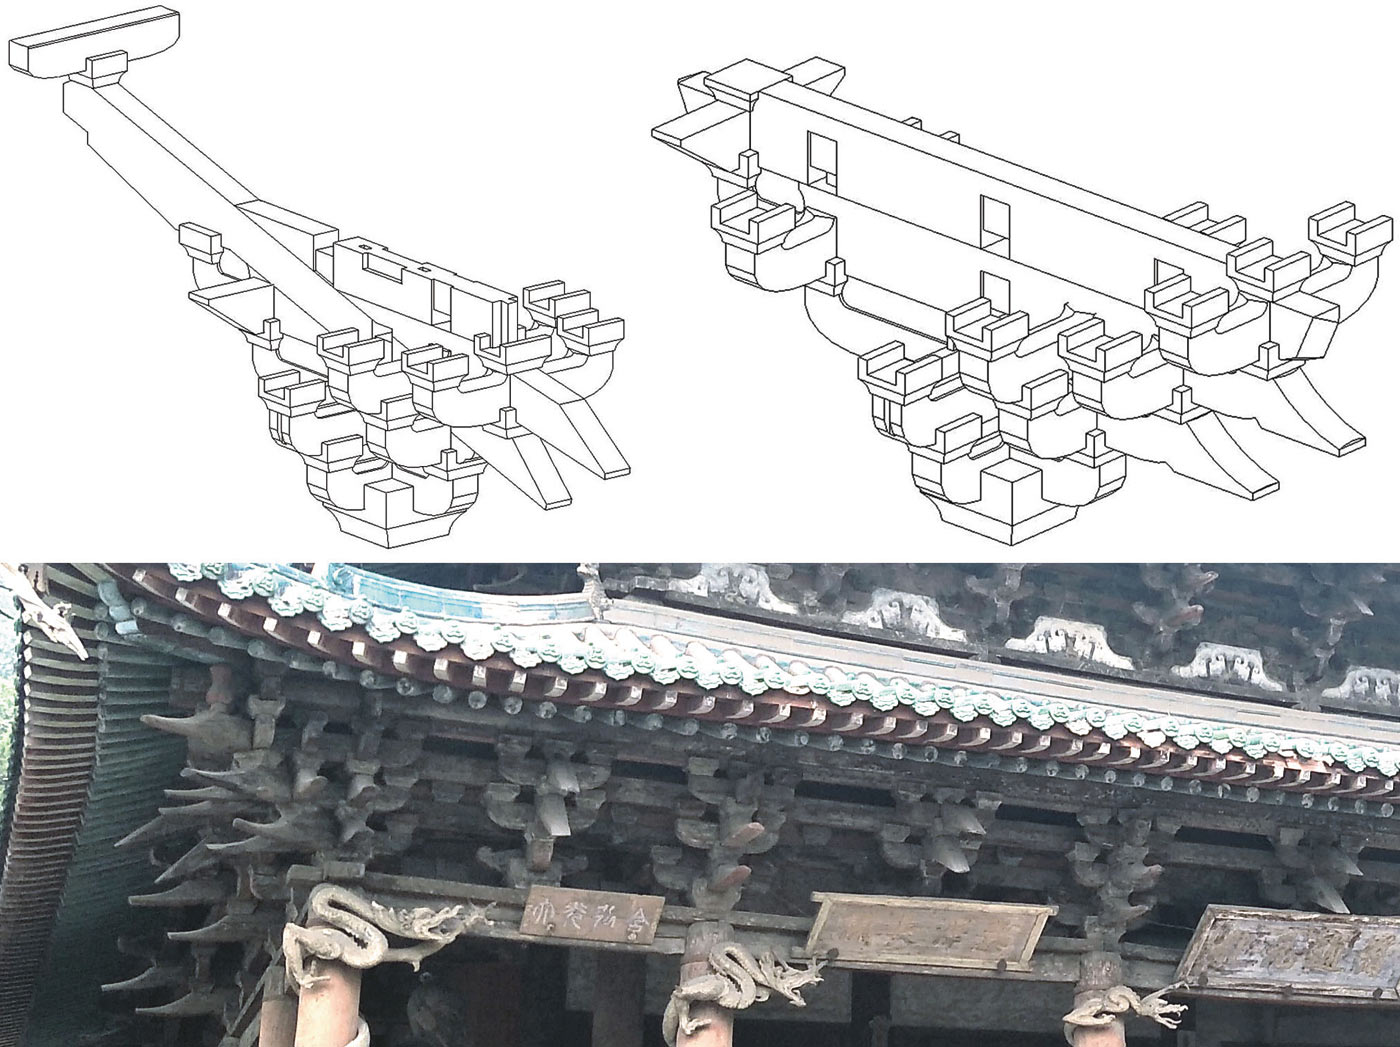 Рис 5. Информационная модель храма Шенмудянь в Китае: узлы системы доугун первого и второго этажей показывают «идеальную» схему сборки кронштейнов, но они не передают их реального состояния [7]